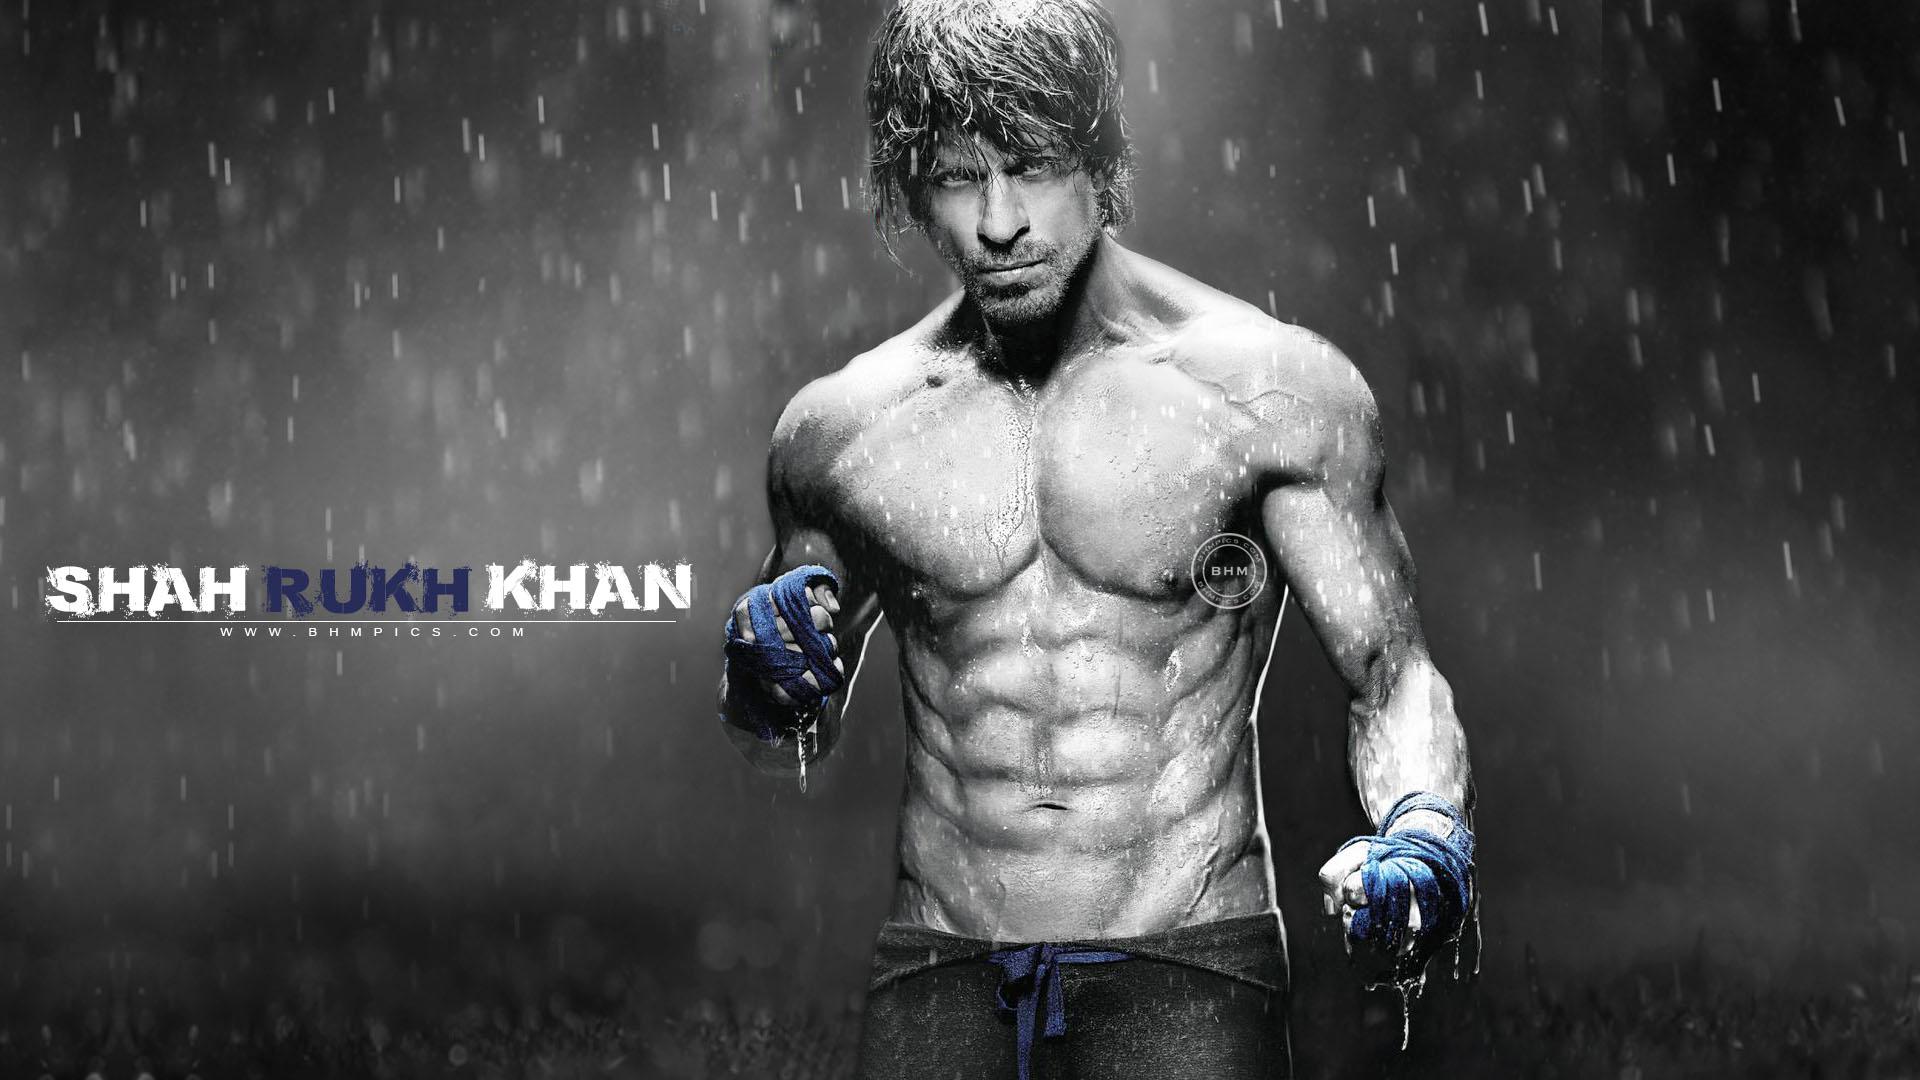 Shah Rukh Khan Eight Pack Abs wallpaper | celebrities | Wallpaper Better